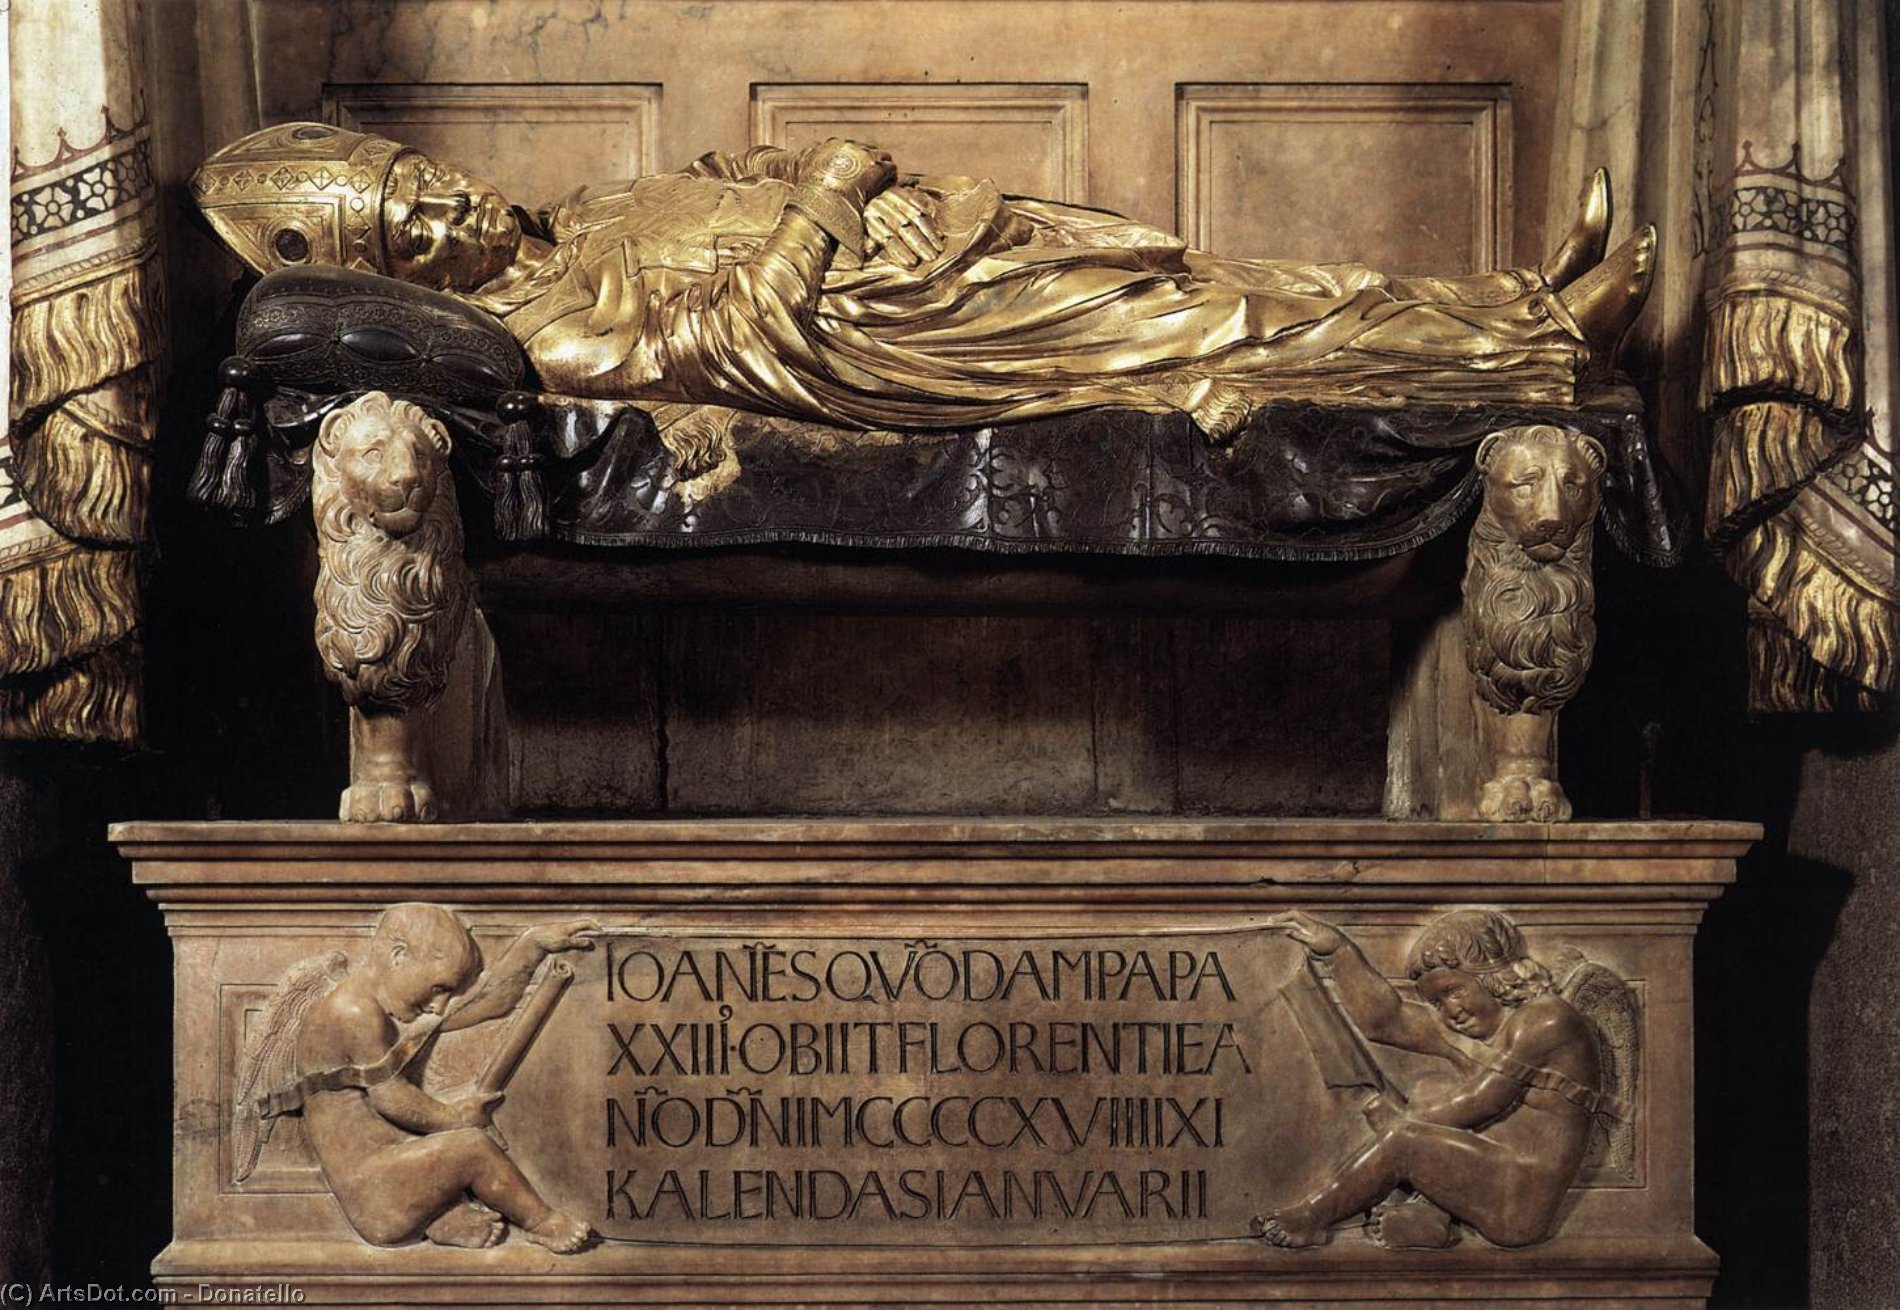 WikiOO.org - Encyclopedia of Fine Arts - Lukisan, Artwork Donatello - Funeral Monument to John XXIII (detail)